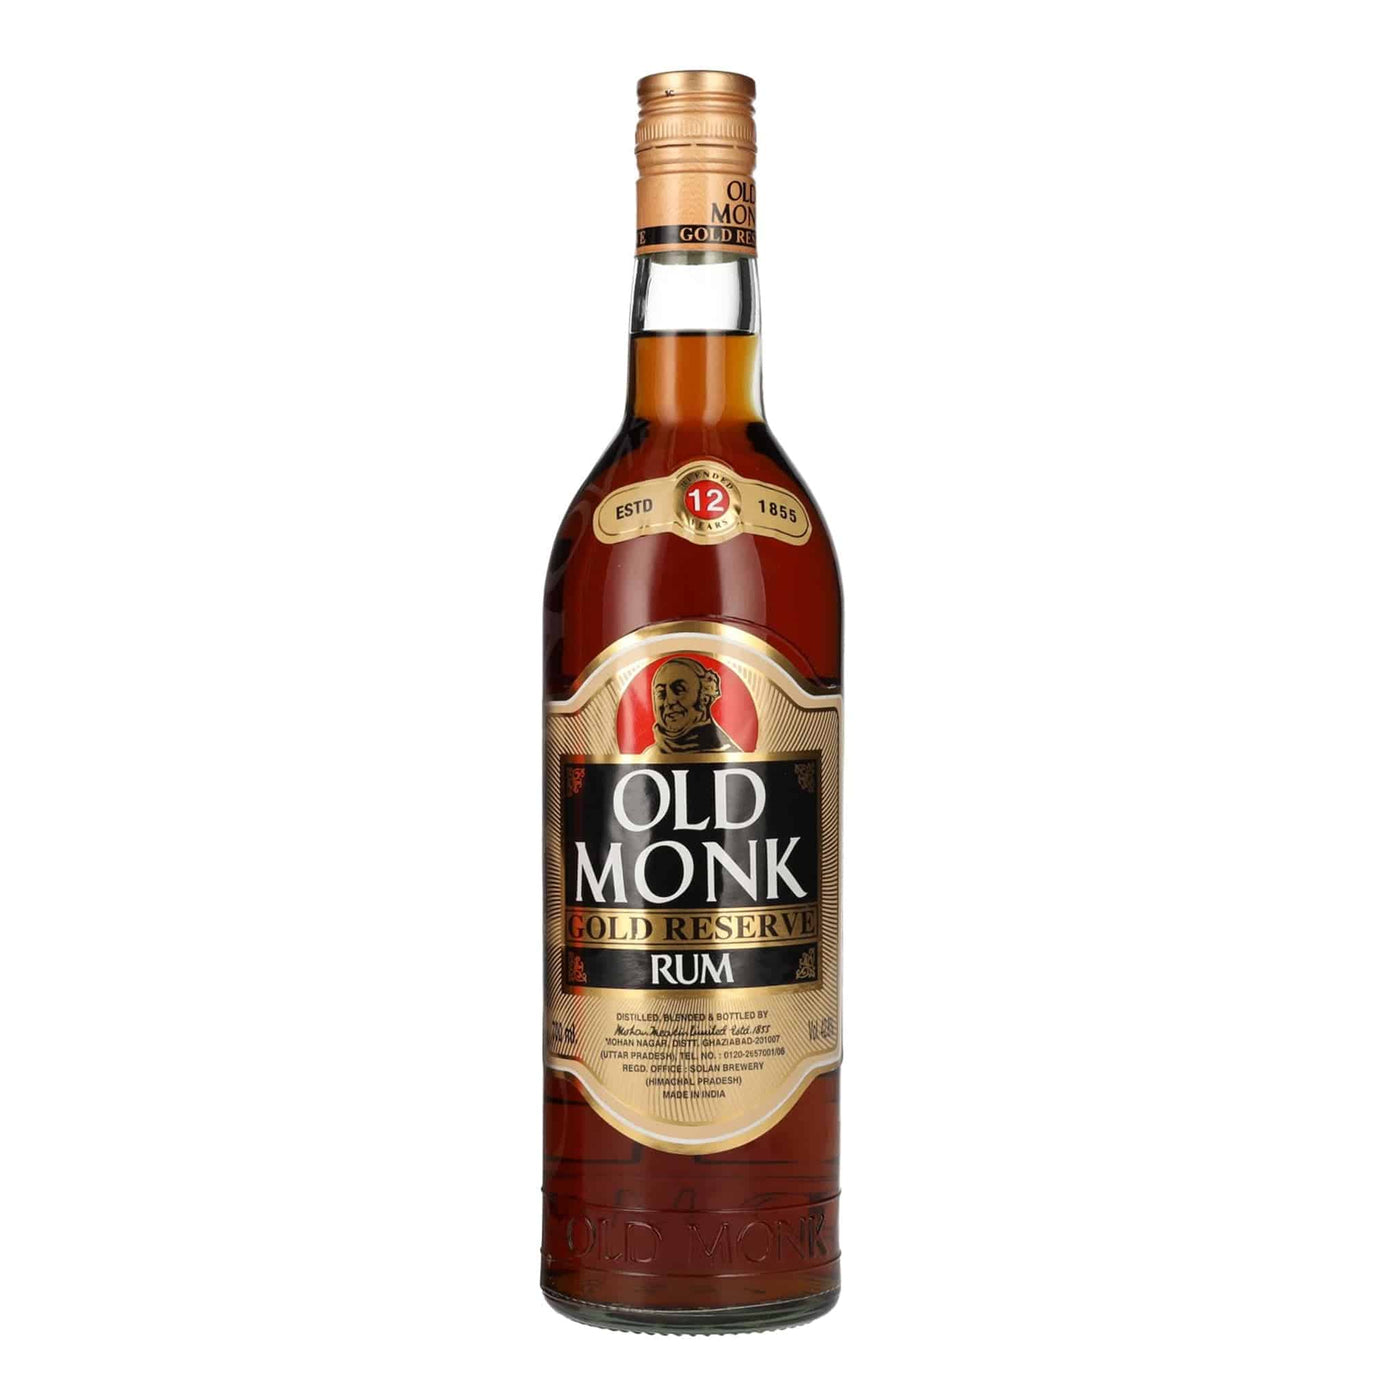 Old Monk Rum 12 Years Rum